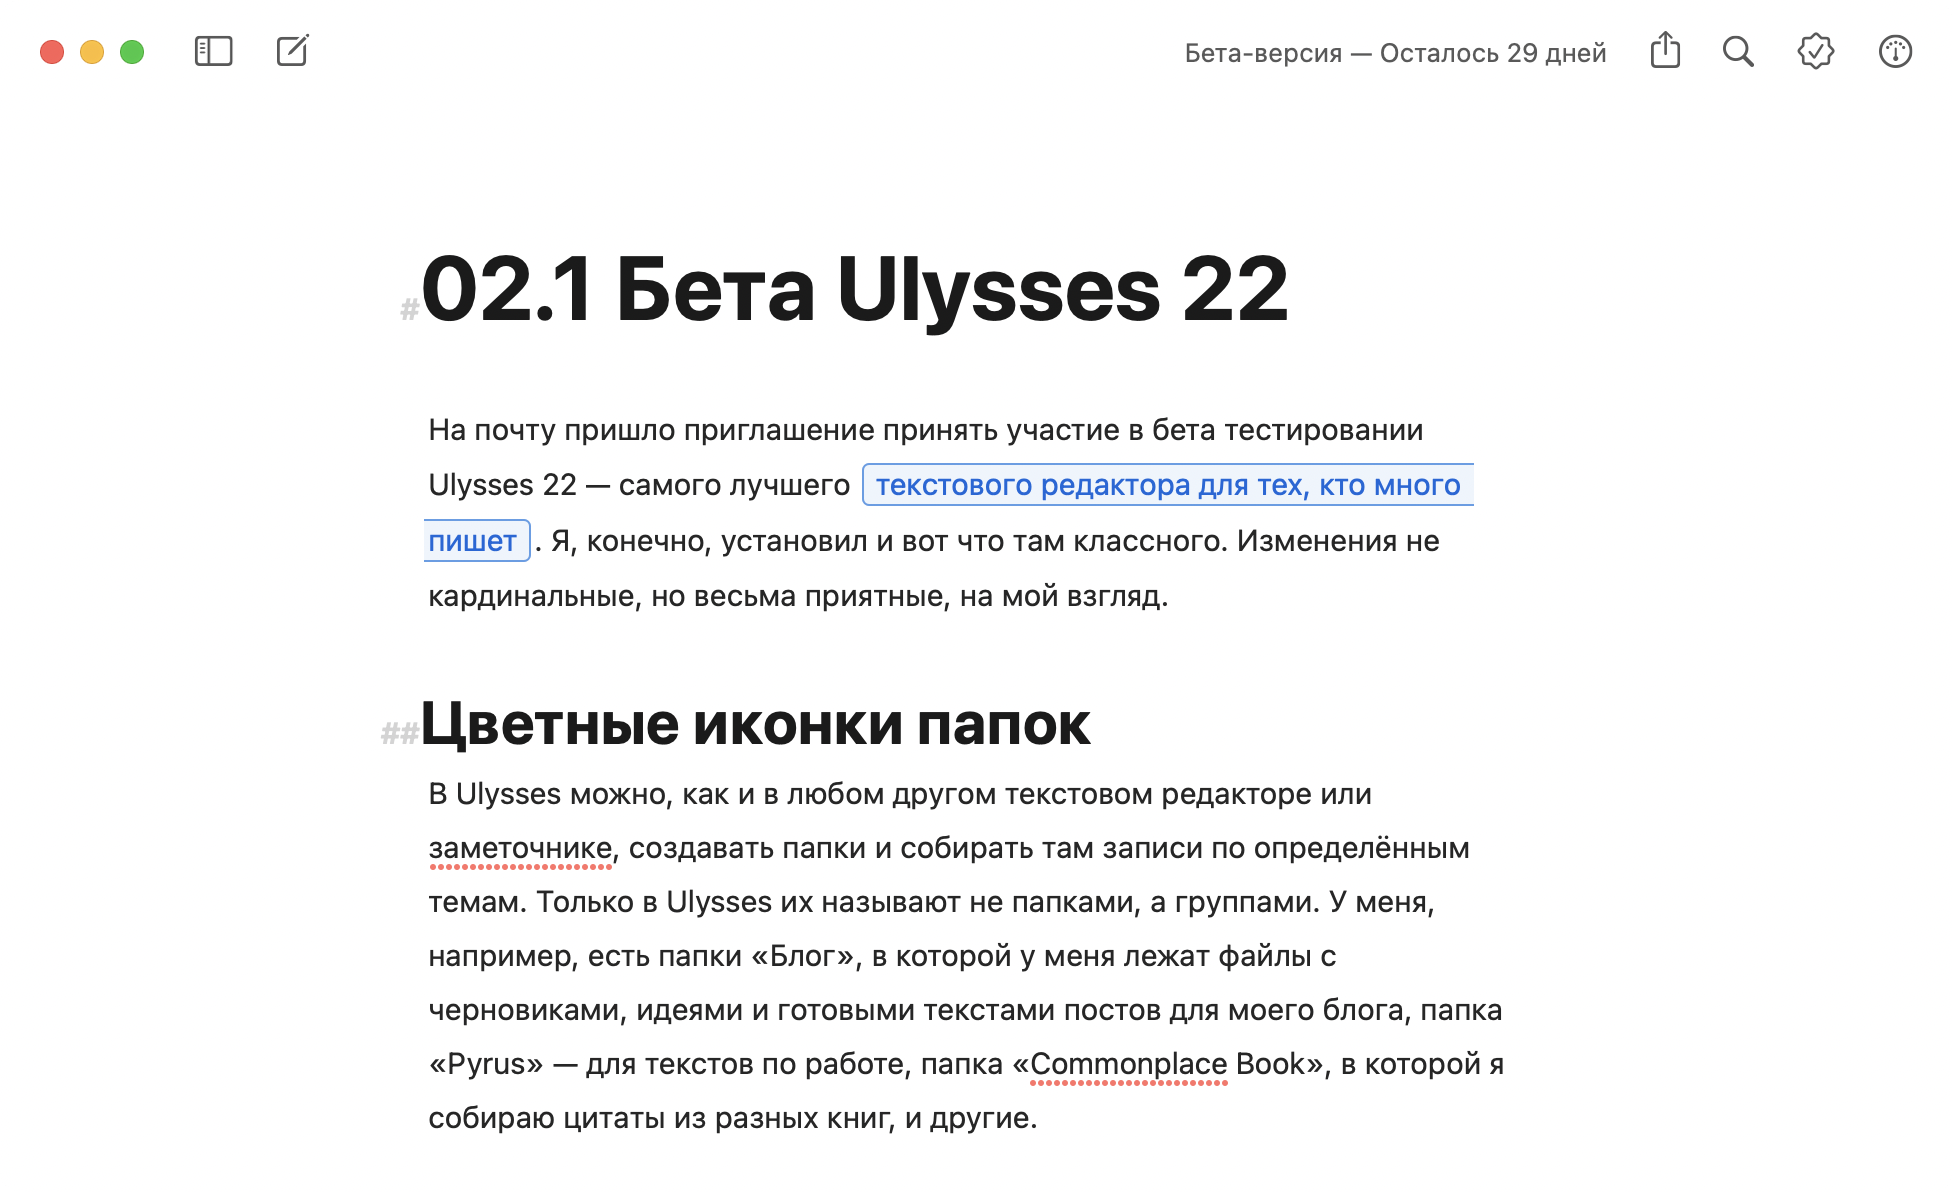 В Ulysses 22 я использую новую тему D22 — с новыми размерами заголовков